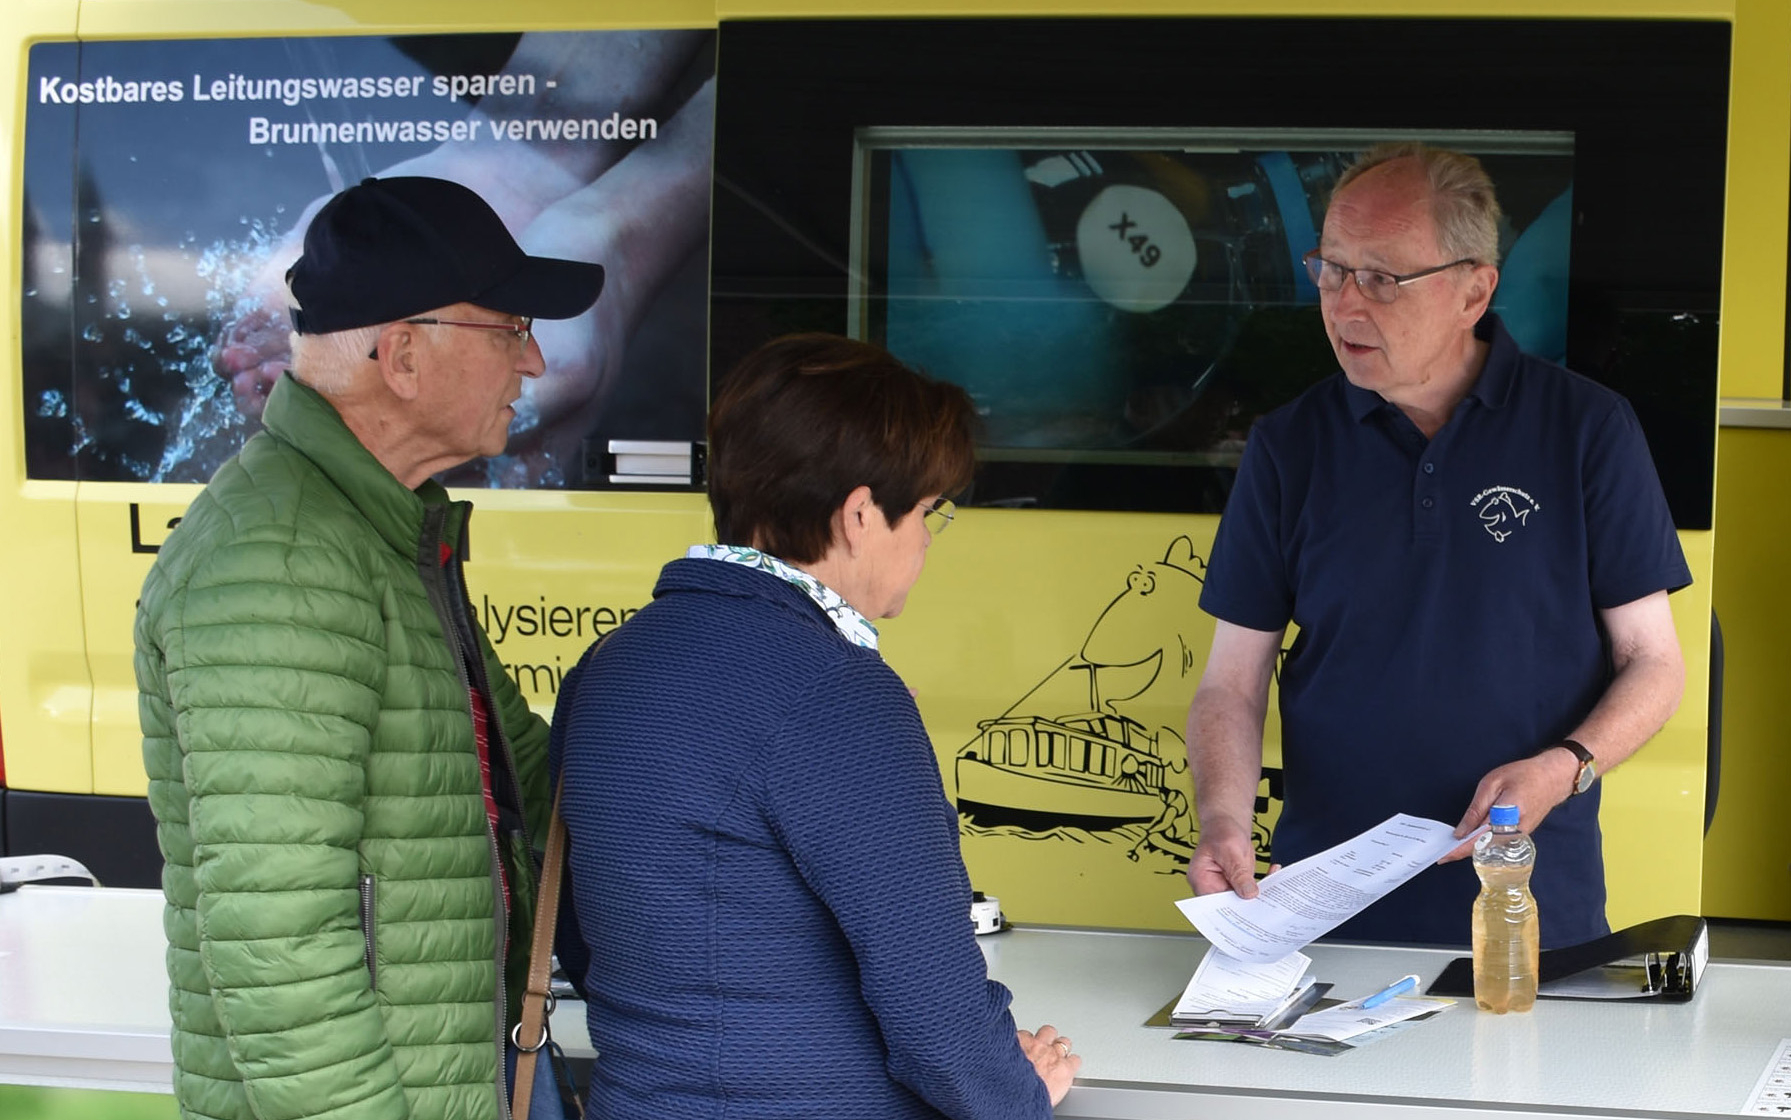 Heinz-Wilhelm Hülsmans (dritte Person von links), ehrenamtlicher Mitarbeiter beim VSR-Gewässerschutz, berät Brunnenbesitzer am Informationsstand des Labormobils.